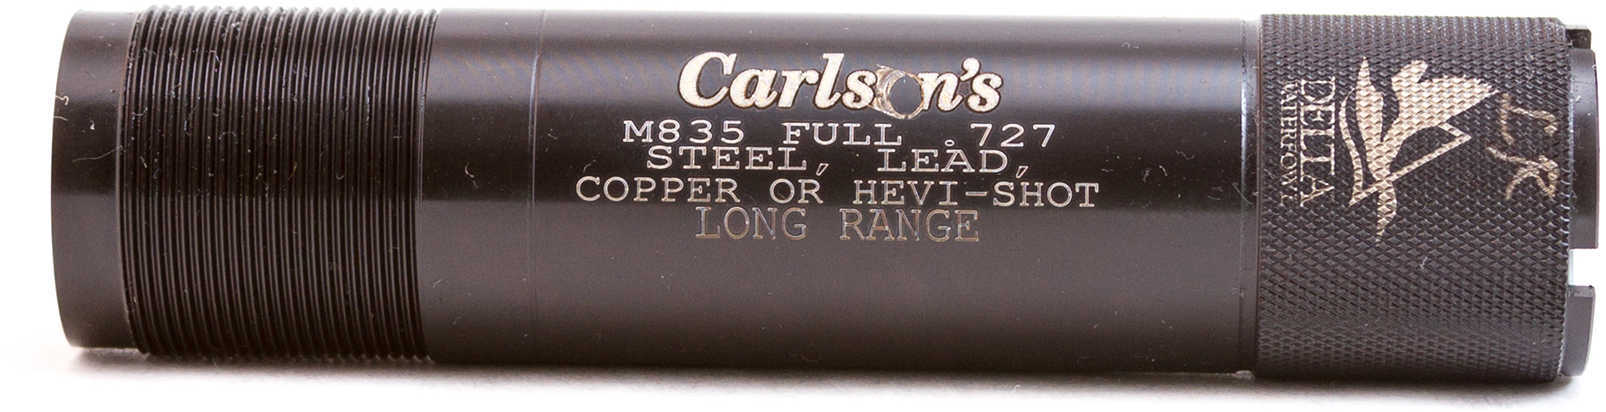 Carlsons Mossberg 835 Choke Tube Long Range 12062